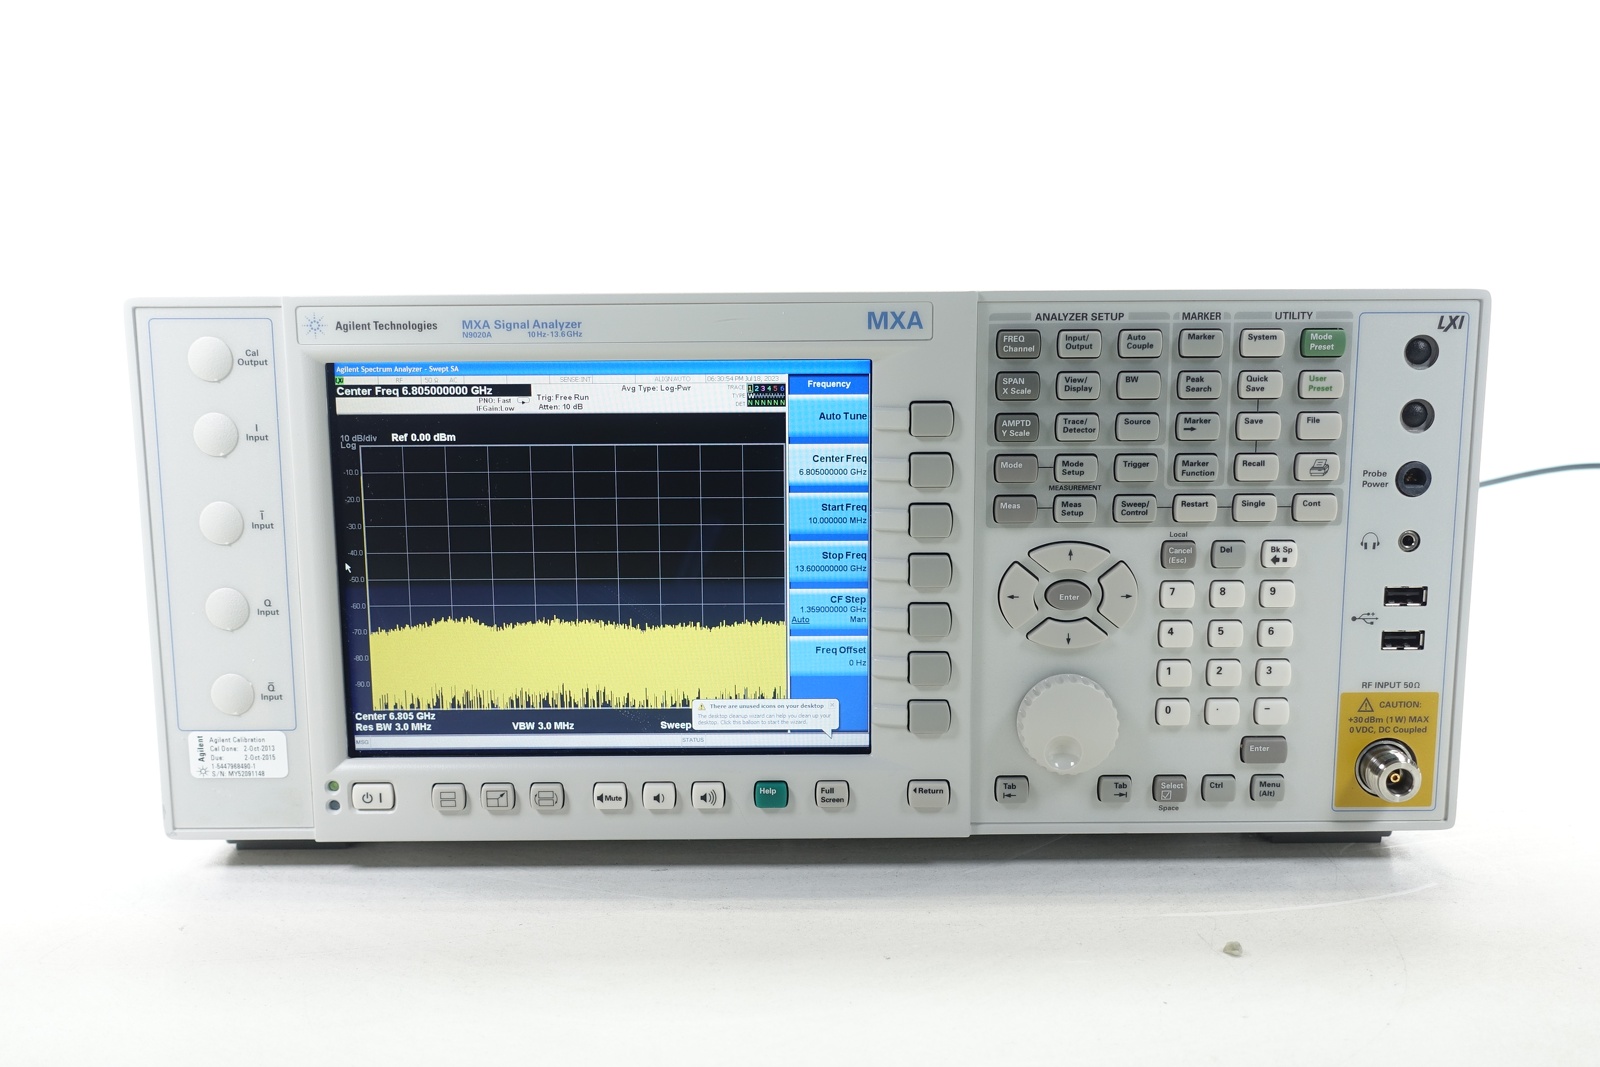 Keysight N9020A-513 10 Hz to 13.6 GHz